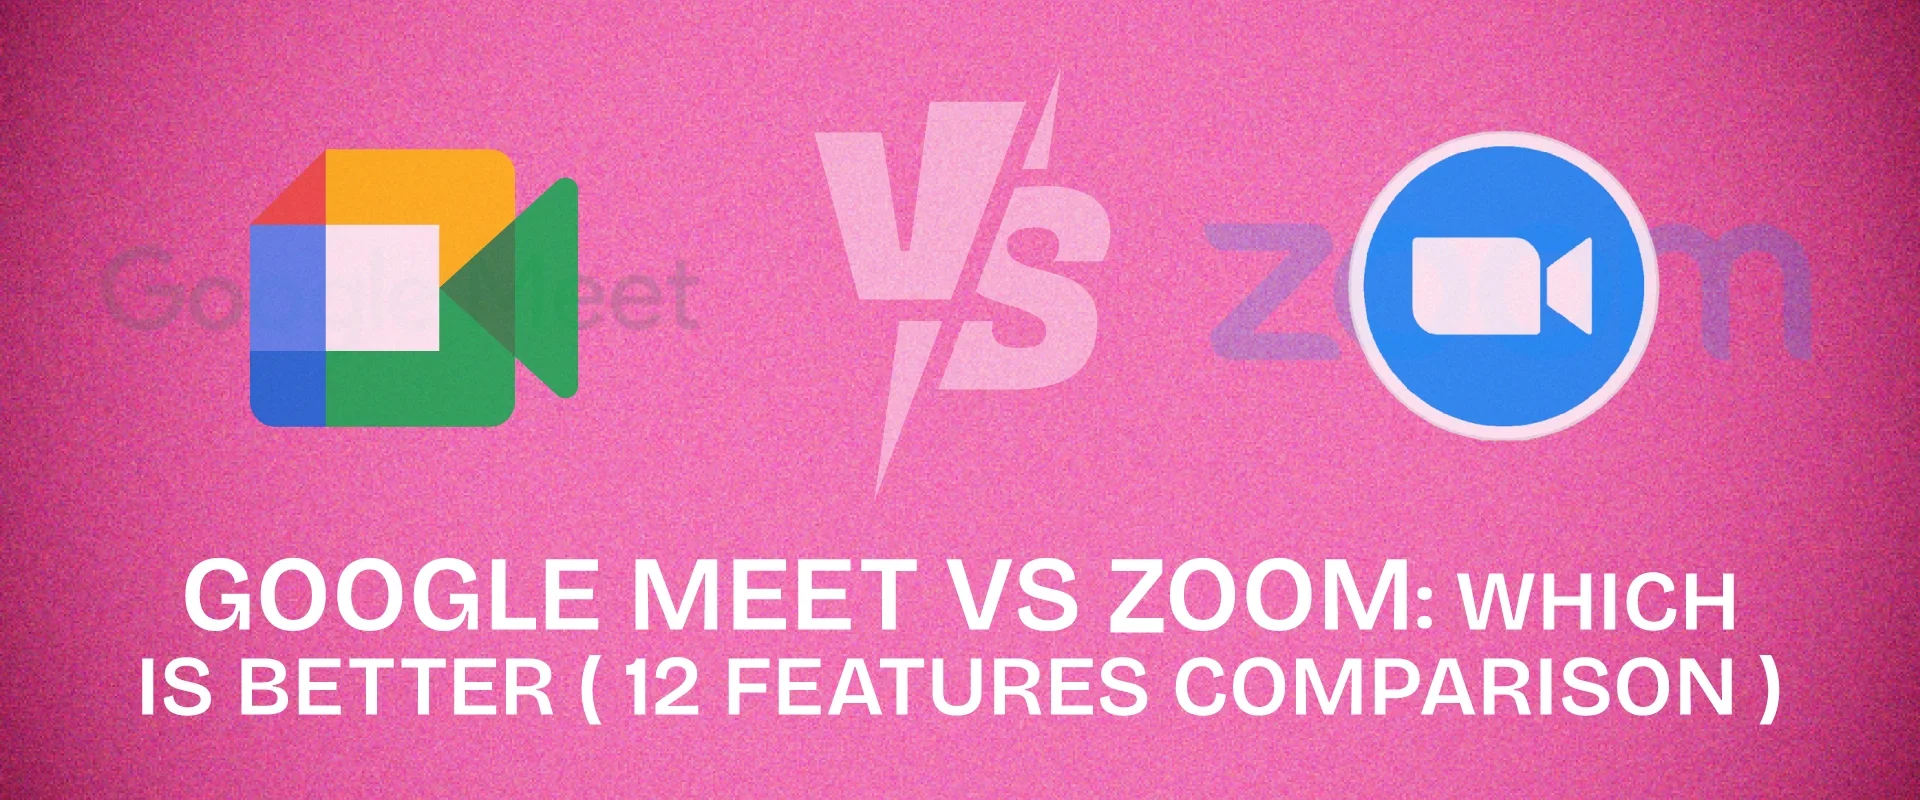 google-meet-vs-zoom